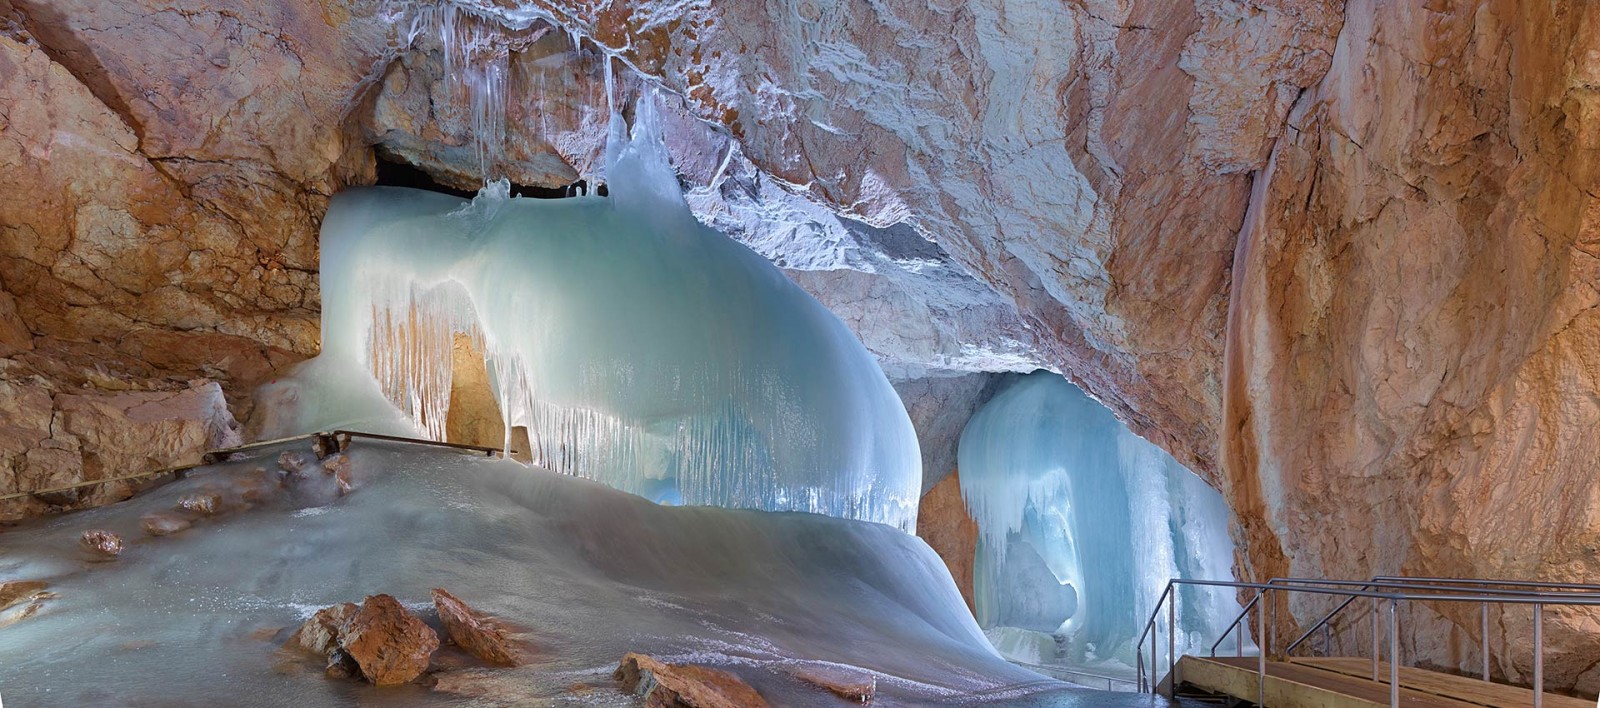 Интересные места: 10 место пещера Айсризенвельт в Австрии